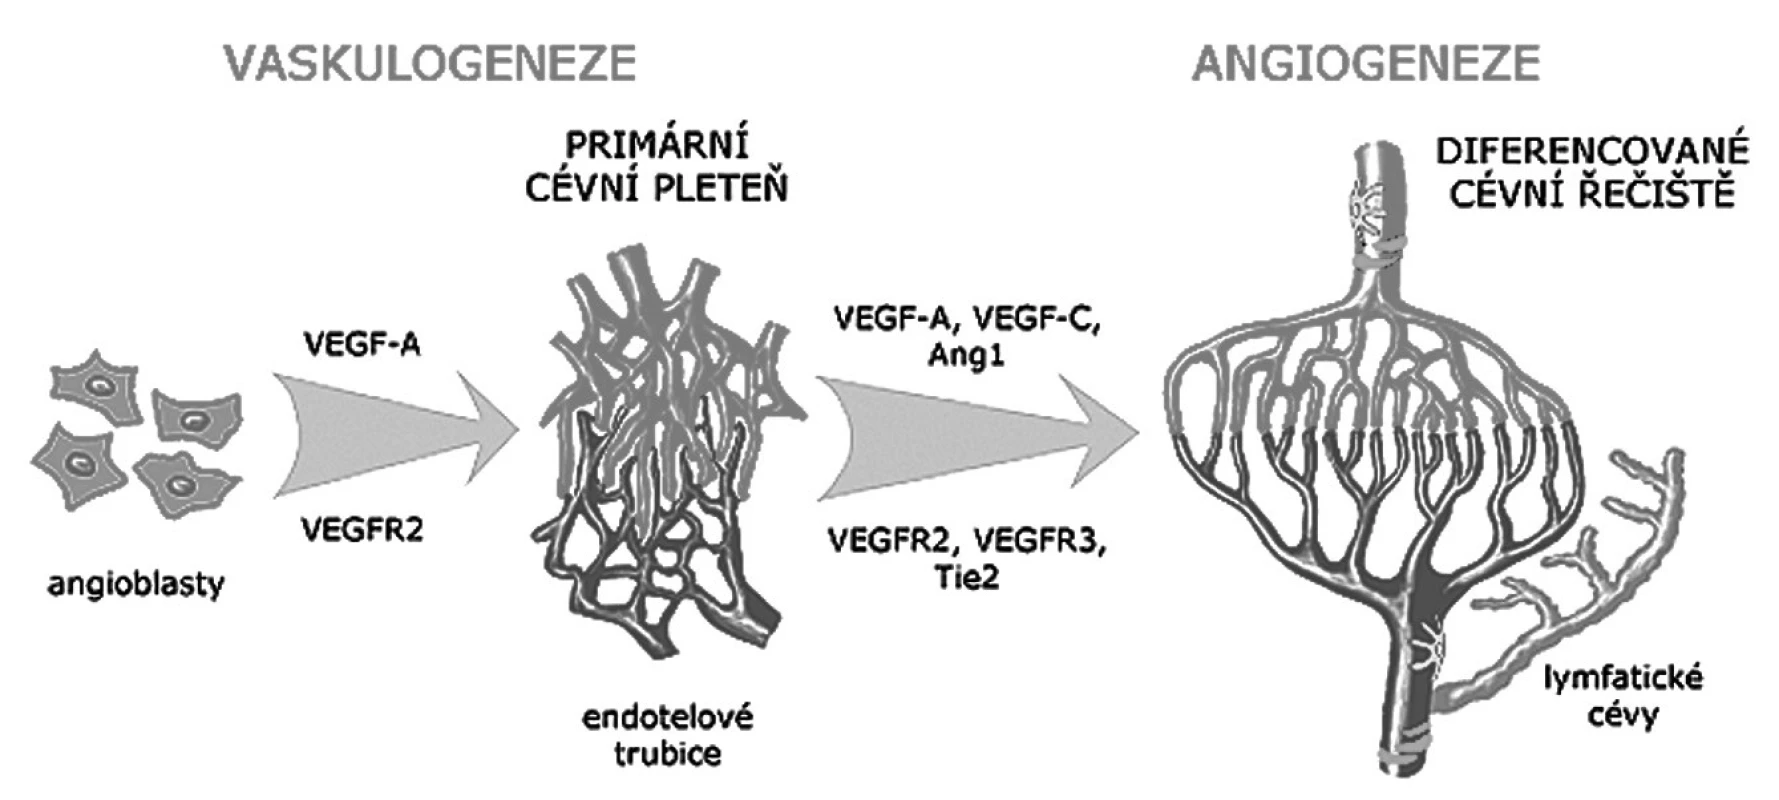 Schéma vývoje krevních a lymfatických cév
Primární cévní pleteně vznikají procesem vaskulogeneze z angioblastů pod vlivem růstového faktoru VEGF. Termínem angiogeneze je označován vznik diferencovaného řečiště remodelací a růstem primárních pletení. Ve stěně větších cév se objevují pericyty a hladké svalové buňky. Lymfatické cévy vznikají většinou pučením z venózního endotelu. Zkratky jsou vysvětleny v textu článku.